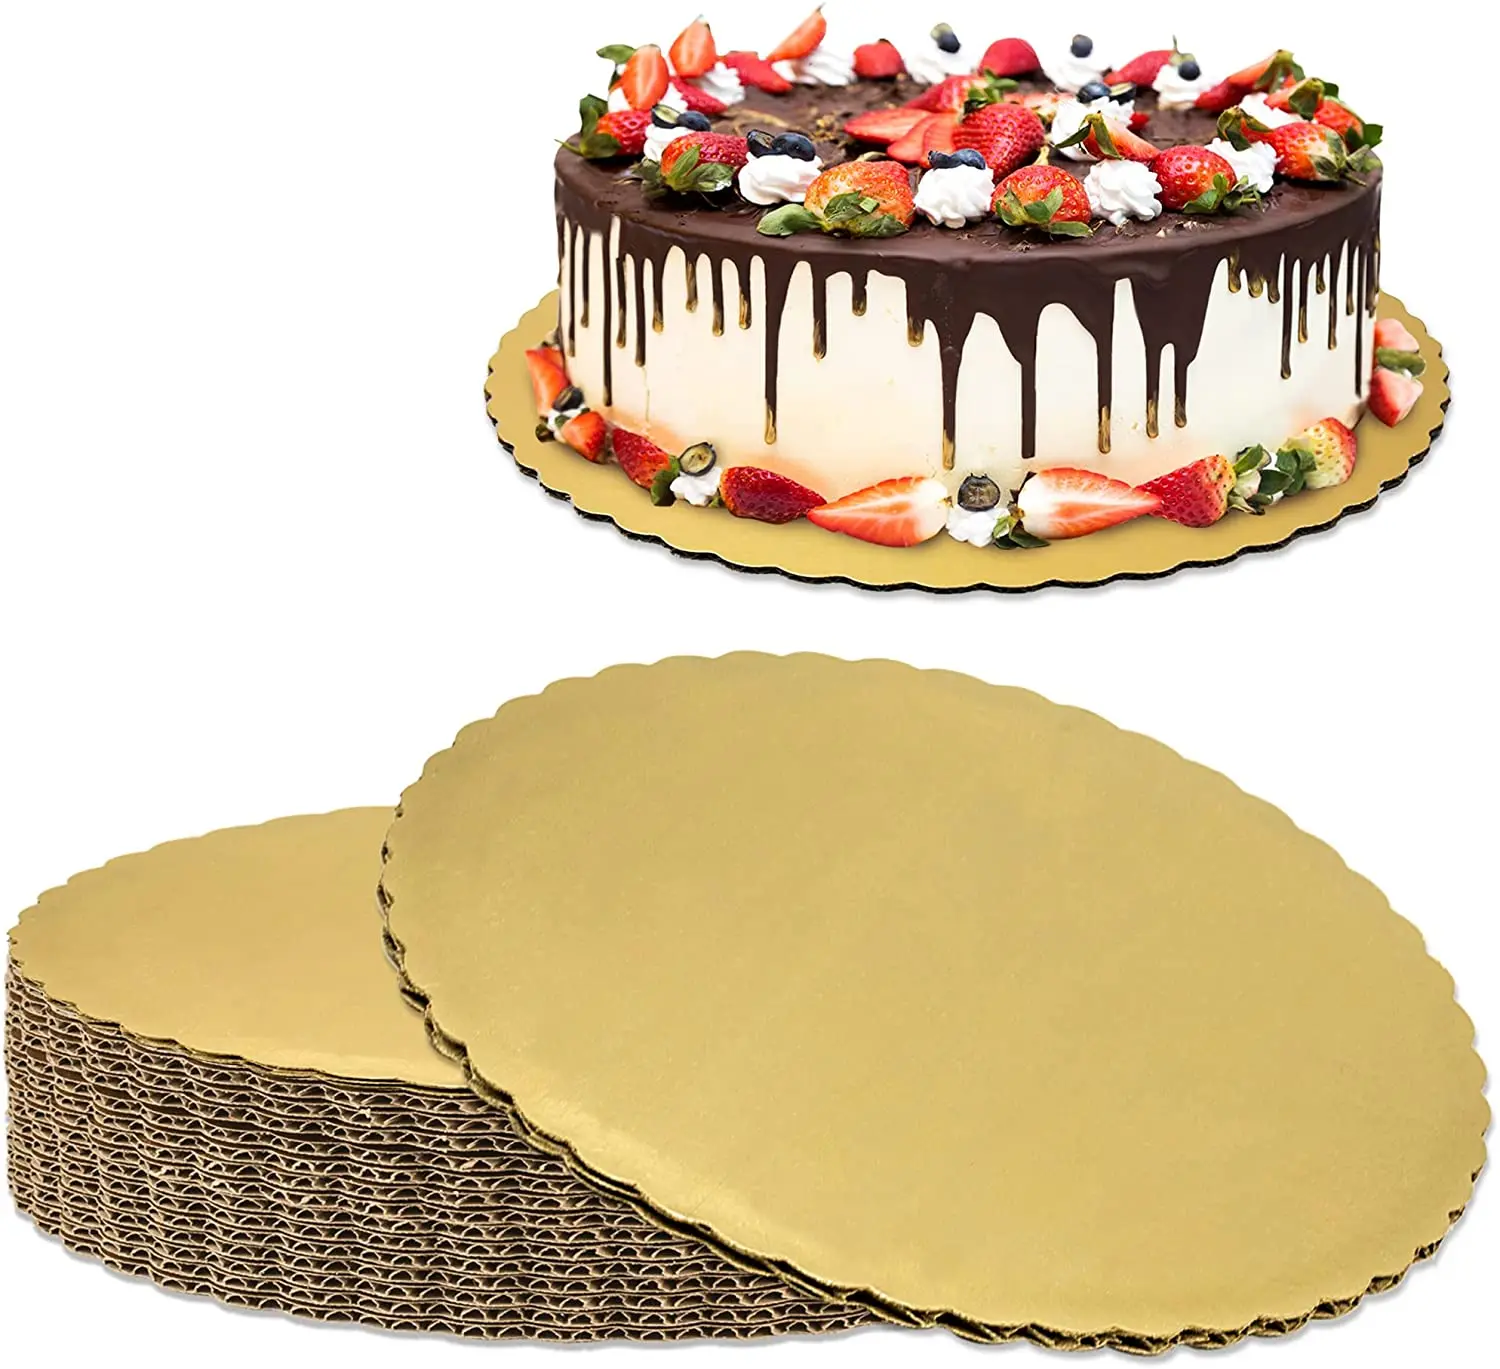 CPDD Lot de 20 planches à gâteau 20,3 cm rondes dorées, bord festonné, base  en carton compressé laminé résistant à la graisse pour pâtisseries, tartes,  pizzas et gâteaux circulaires 20,3 cm 